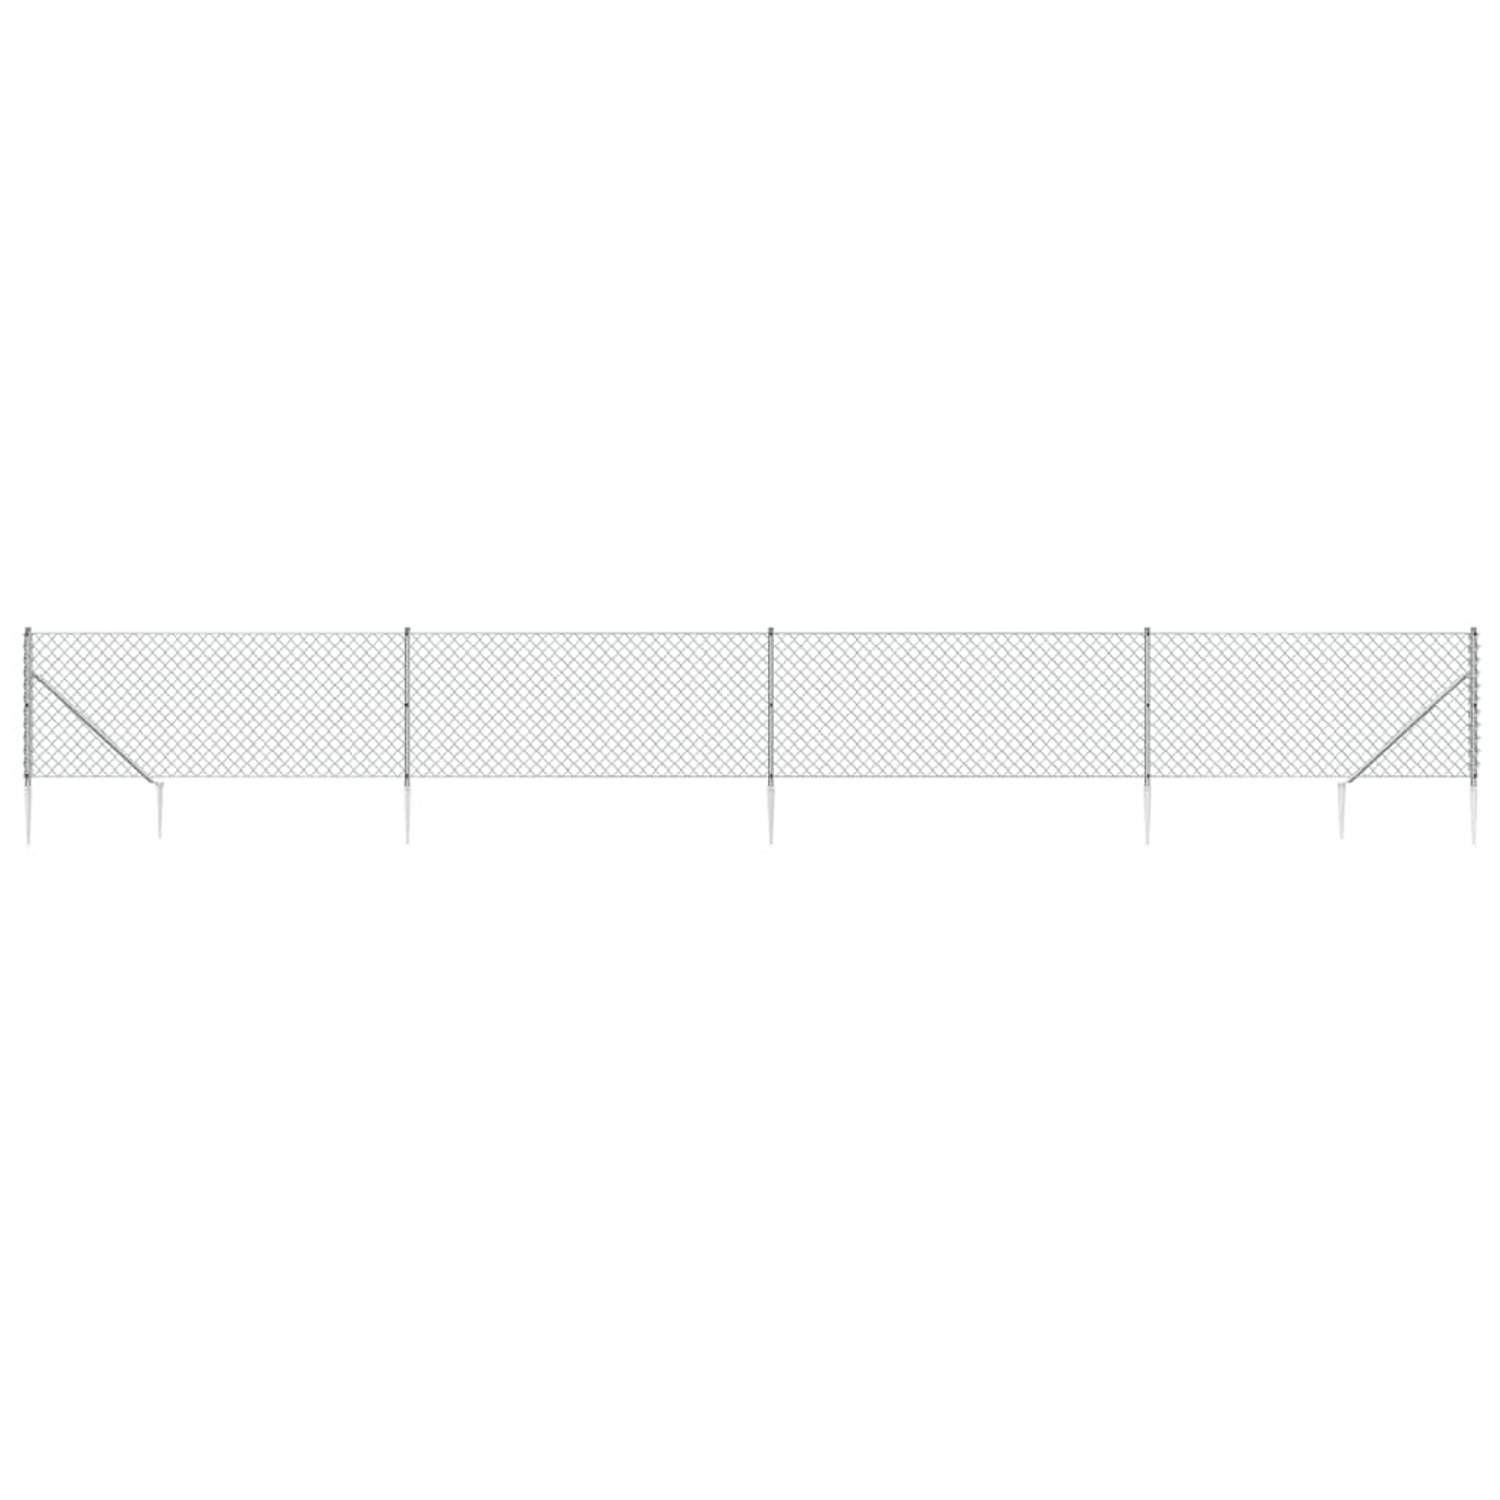 The Living Store Gaashek - Zilver - 1.1 x 10 m - 60 x 60 mm - 1.3/2.2mm - PVC-coating - Gegalvaniseerd staal - Duurzaam - In elkaar grijpend ontwerp - Montage vereist - Inclusief a